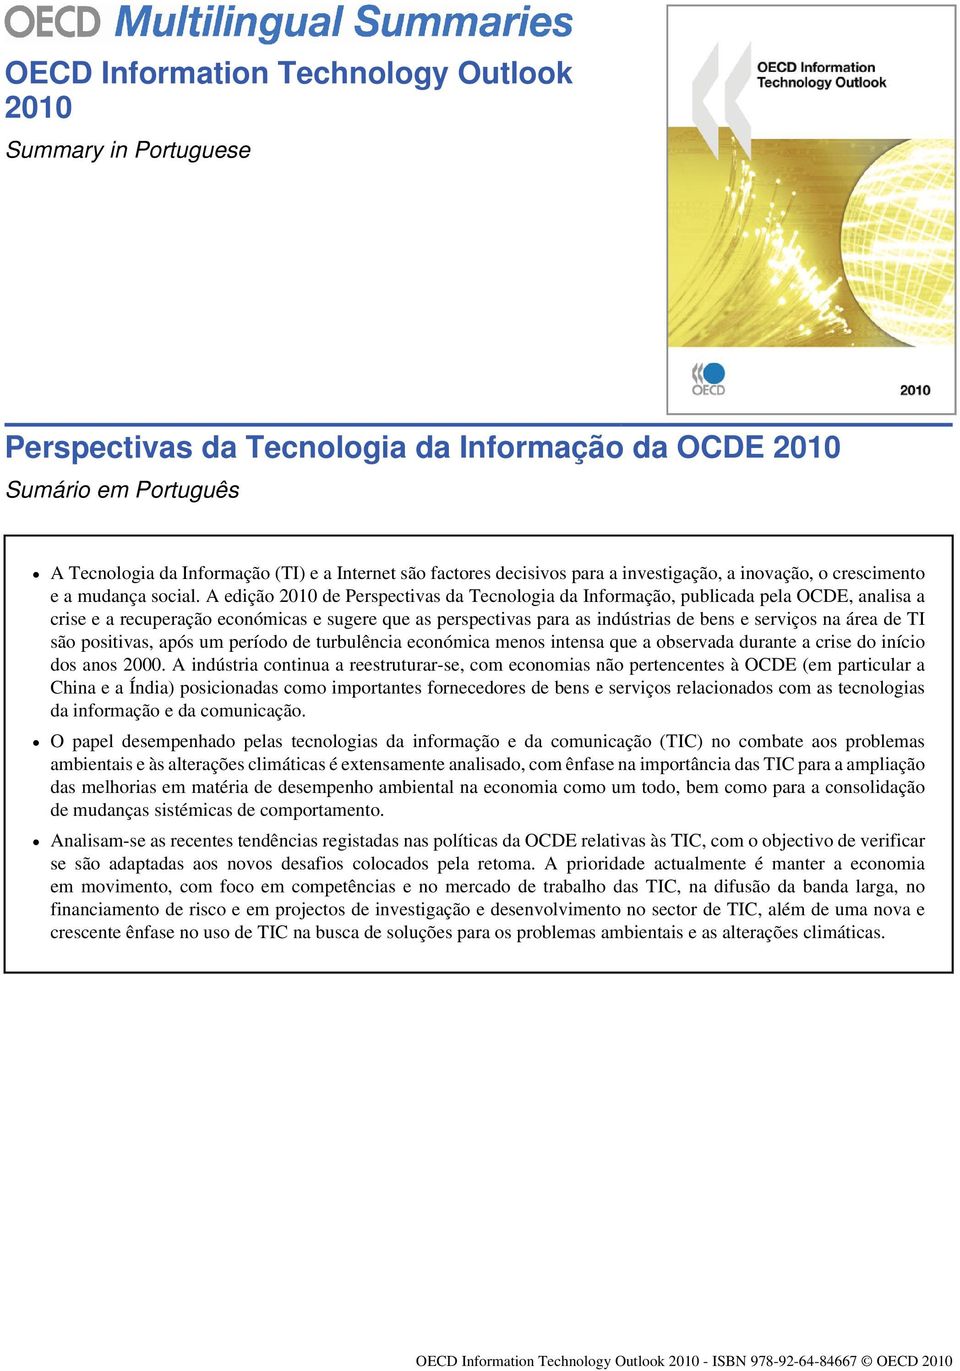 A edição 2010 de Perspectivas da Tecnologia da Informação, publicada pela OCDE, analisa a crise e a recuperação económicas e sugere que as perspectivas para as indústrias de bens e serviços na área